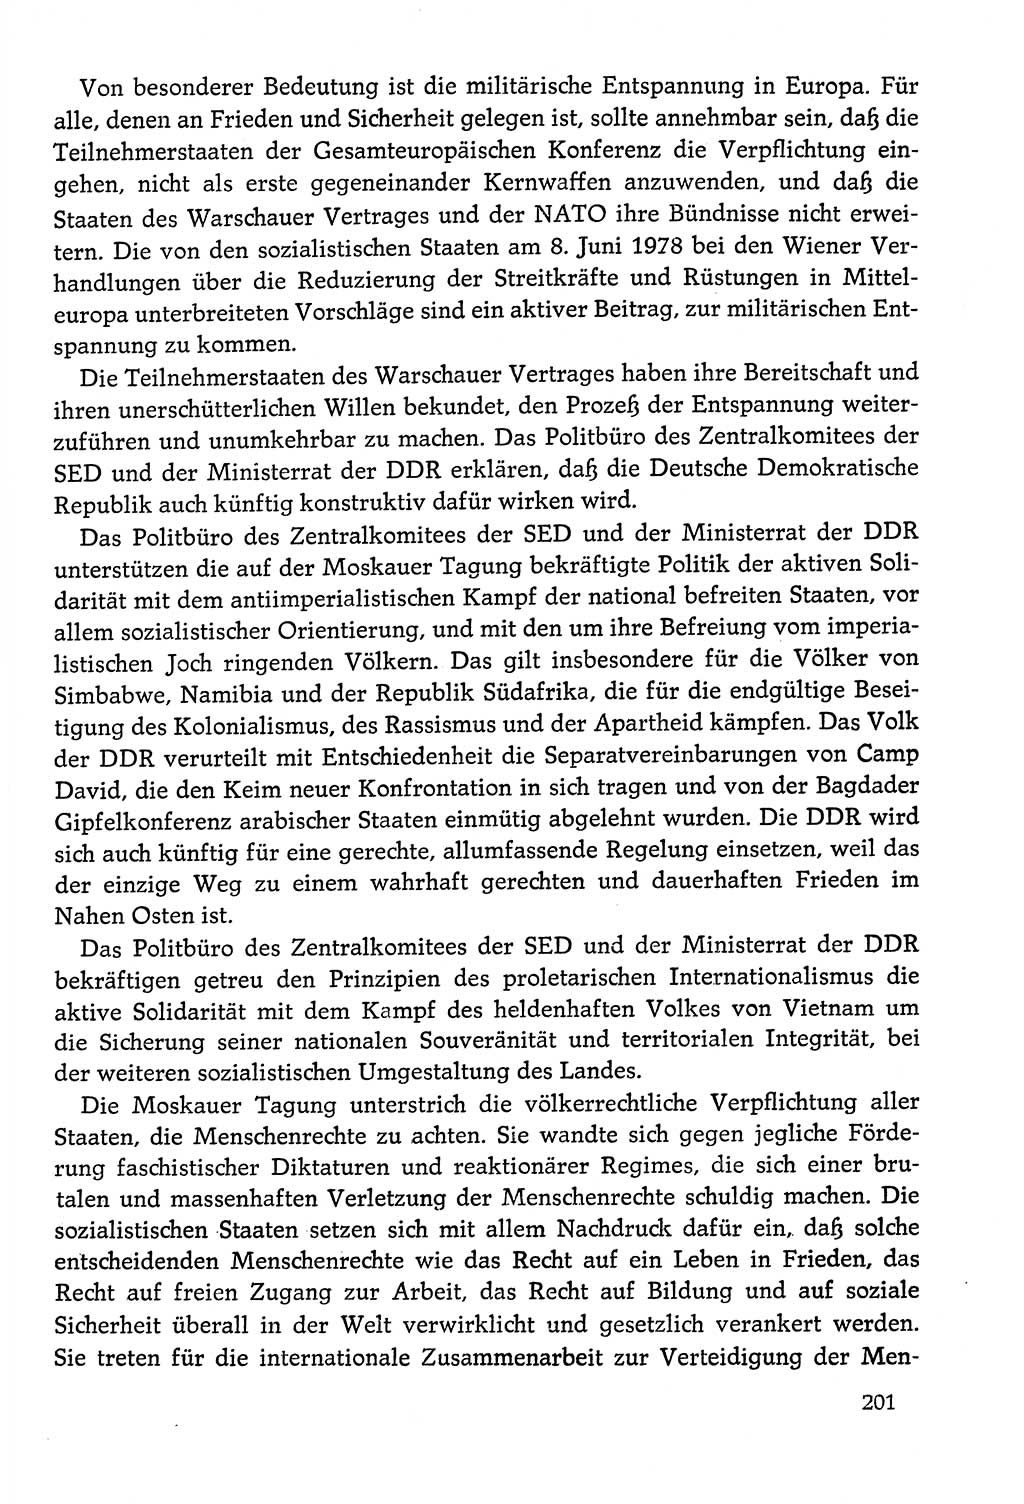 Dokumente der Sozialistischen Einheitspartei Deutschlands (SED) [Deutsche Demokratische Republik (DDR)] 1978-1979, Seite 201 (Dok. SED DDR 1978-1979, S. 201)